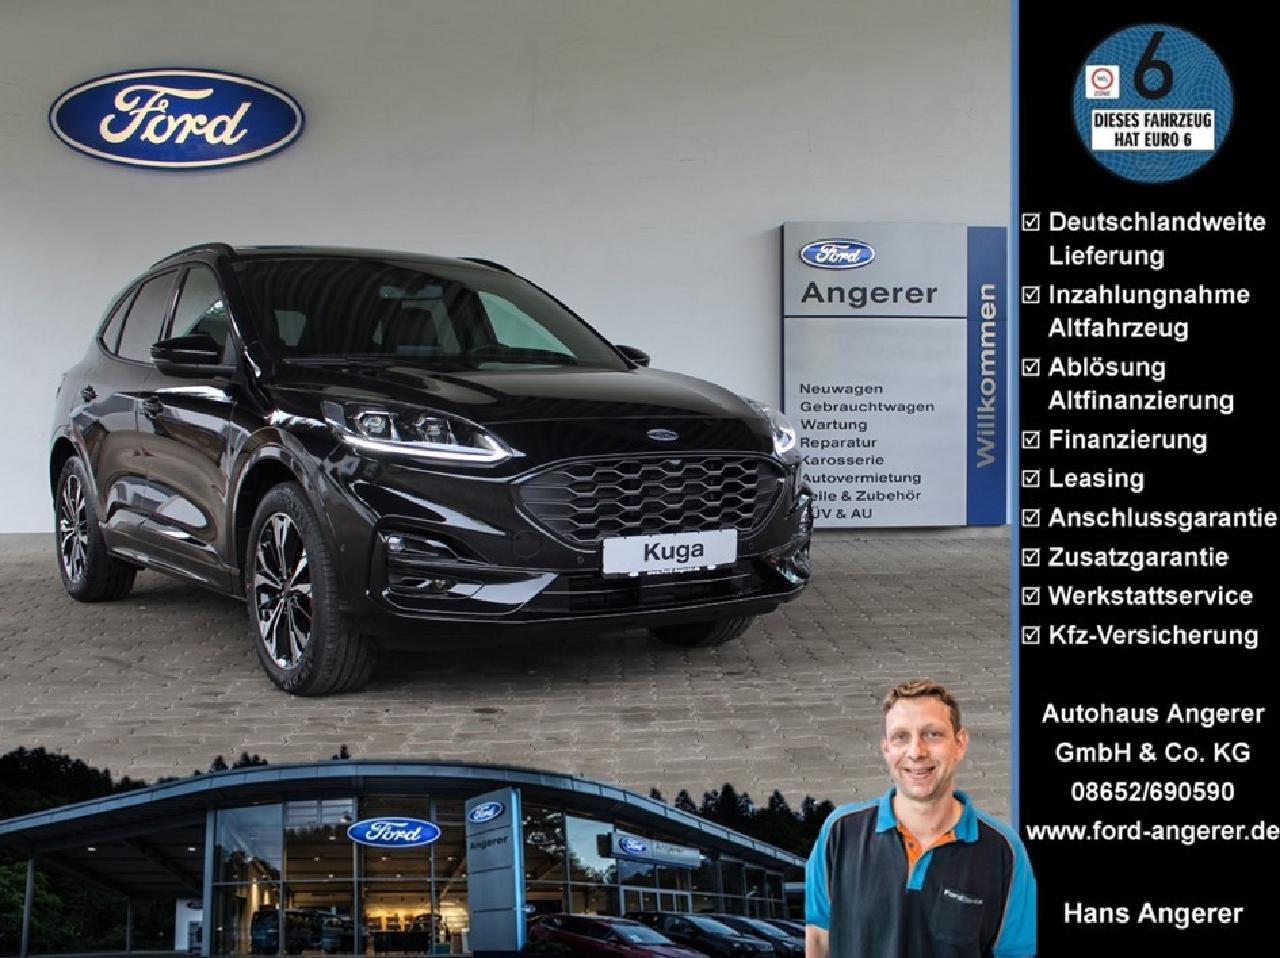 Ford Kuga gebraucht kaufen in Neuweiler Preis 22990 eur - Int.Nr.: 06271  VERKAUFT